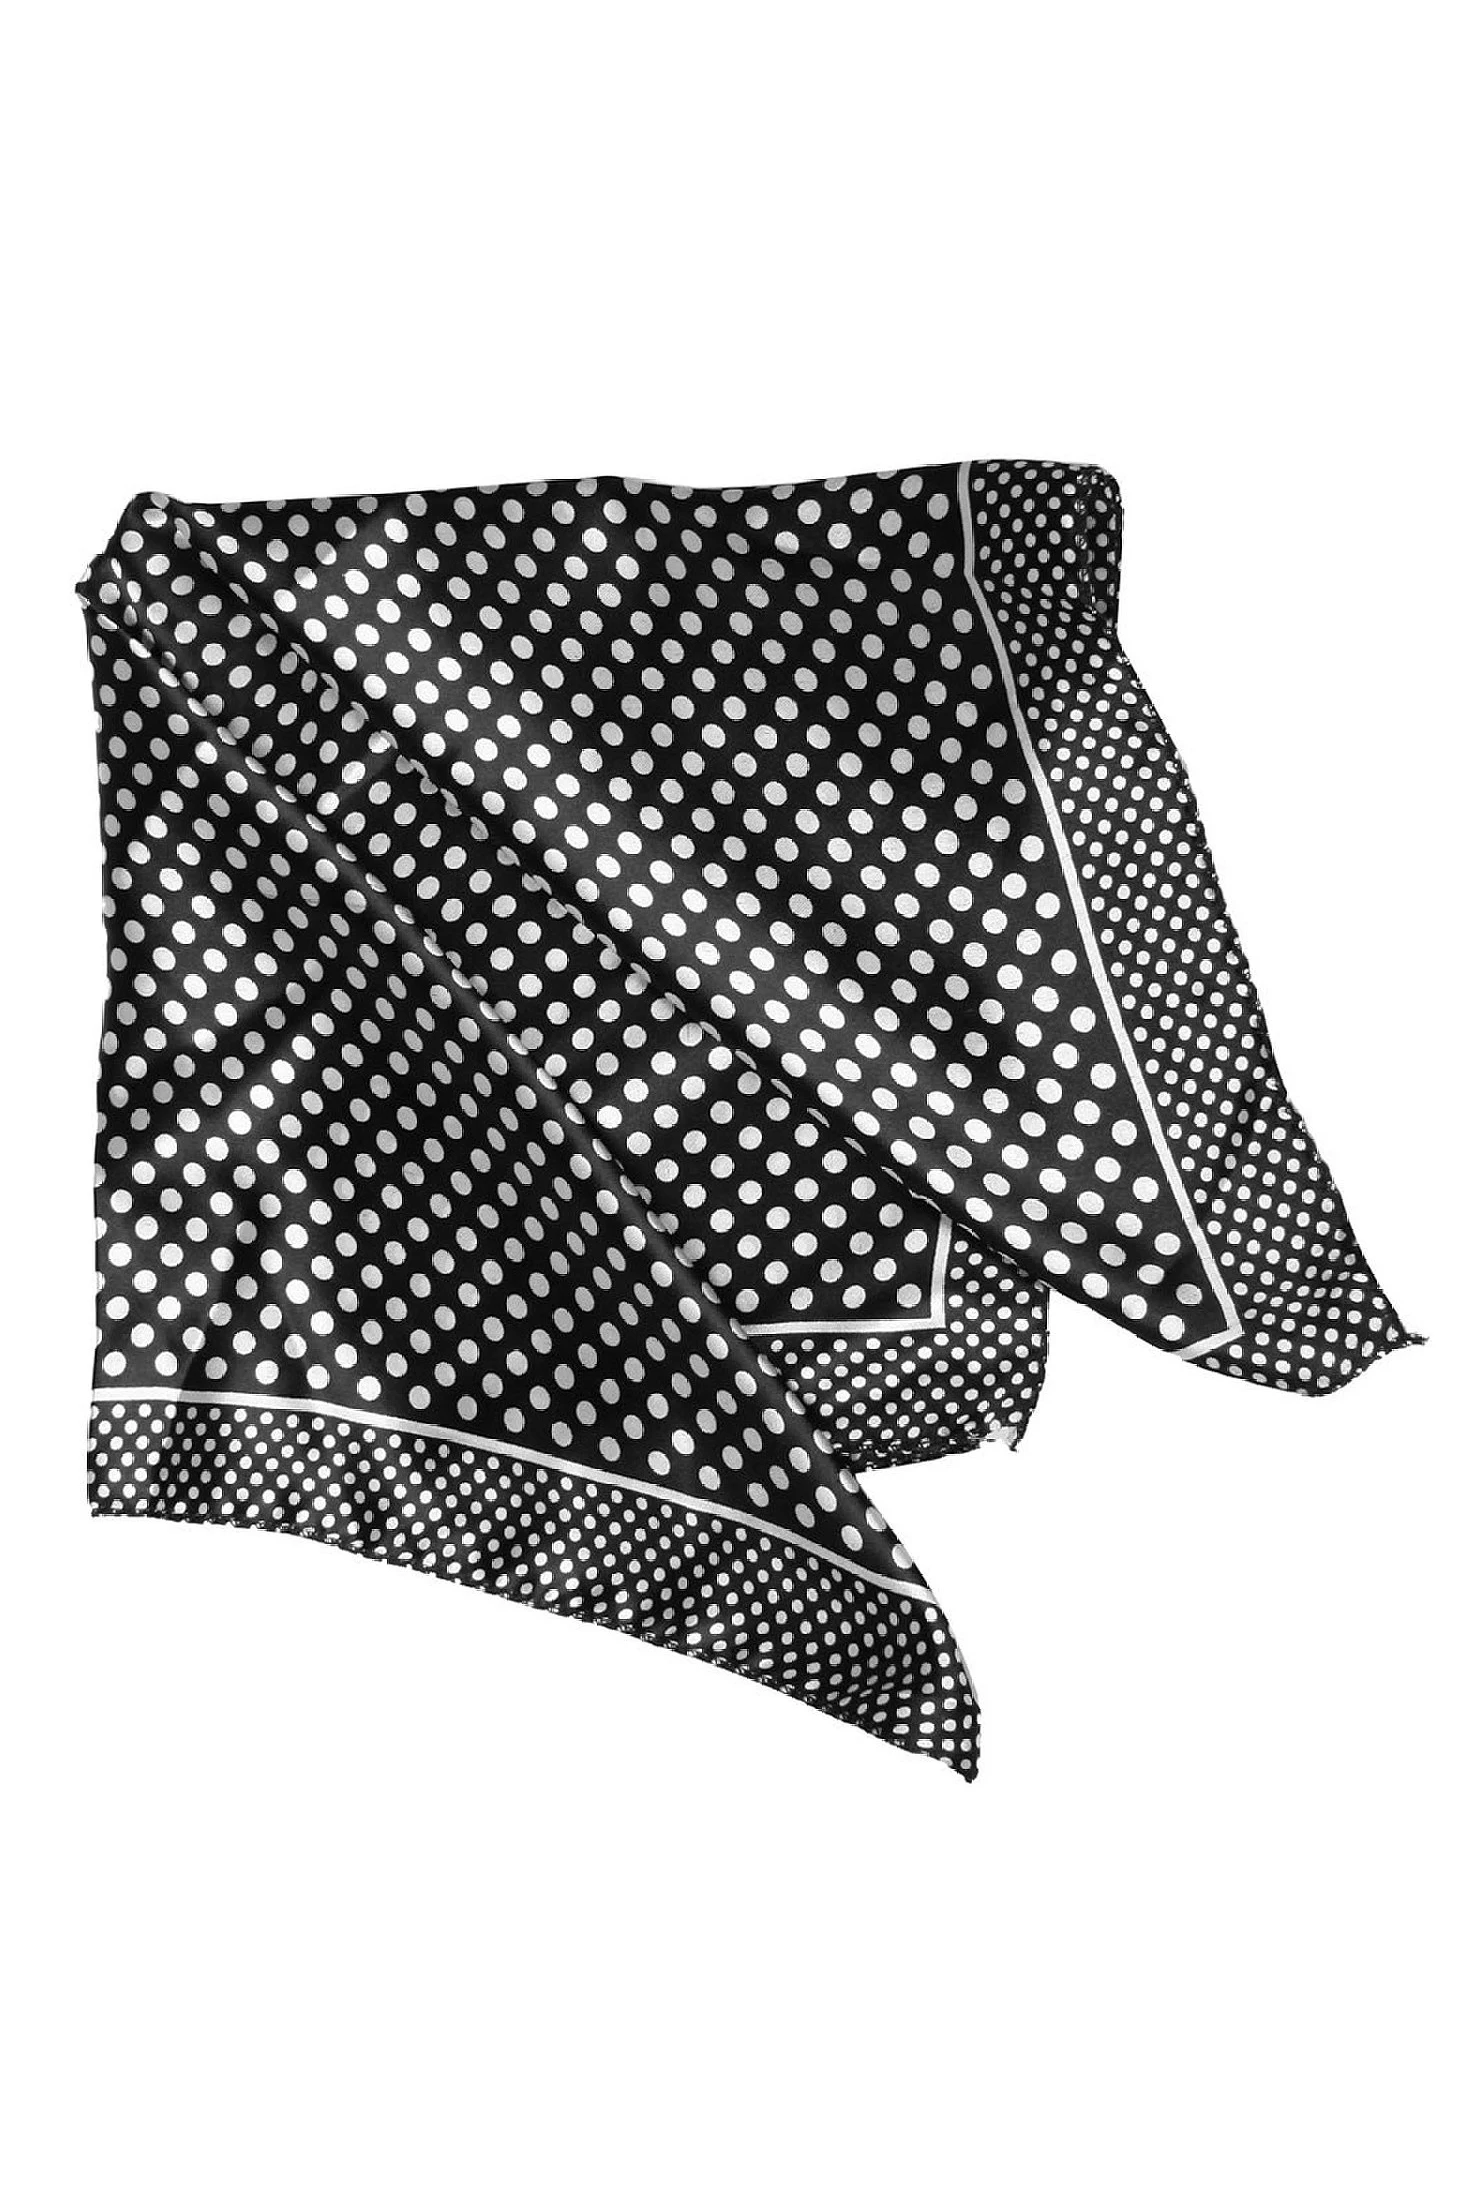 Принт полиэстер 20 "платок шейный шарф для женщины